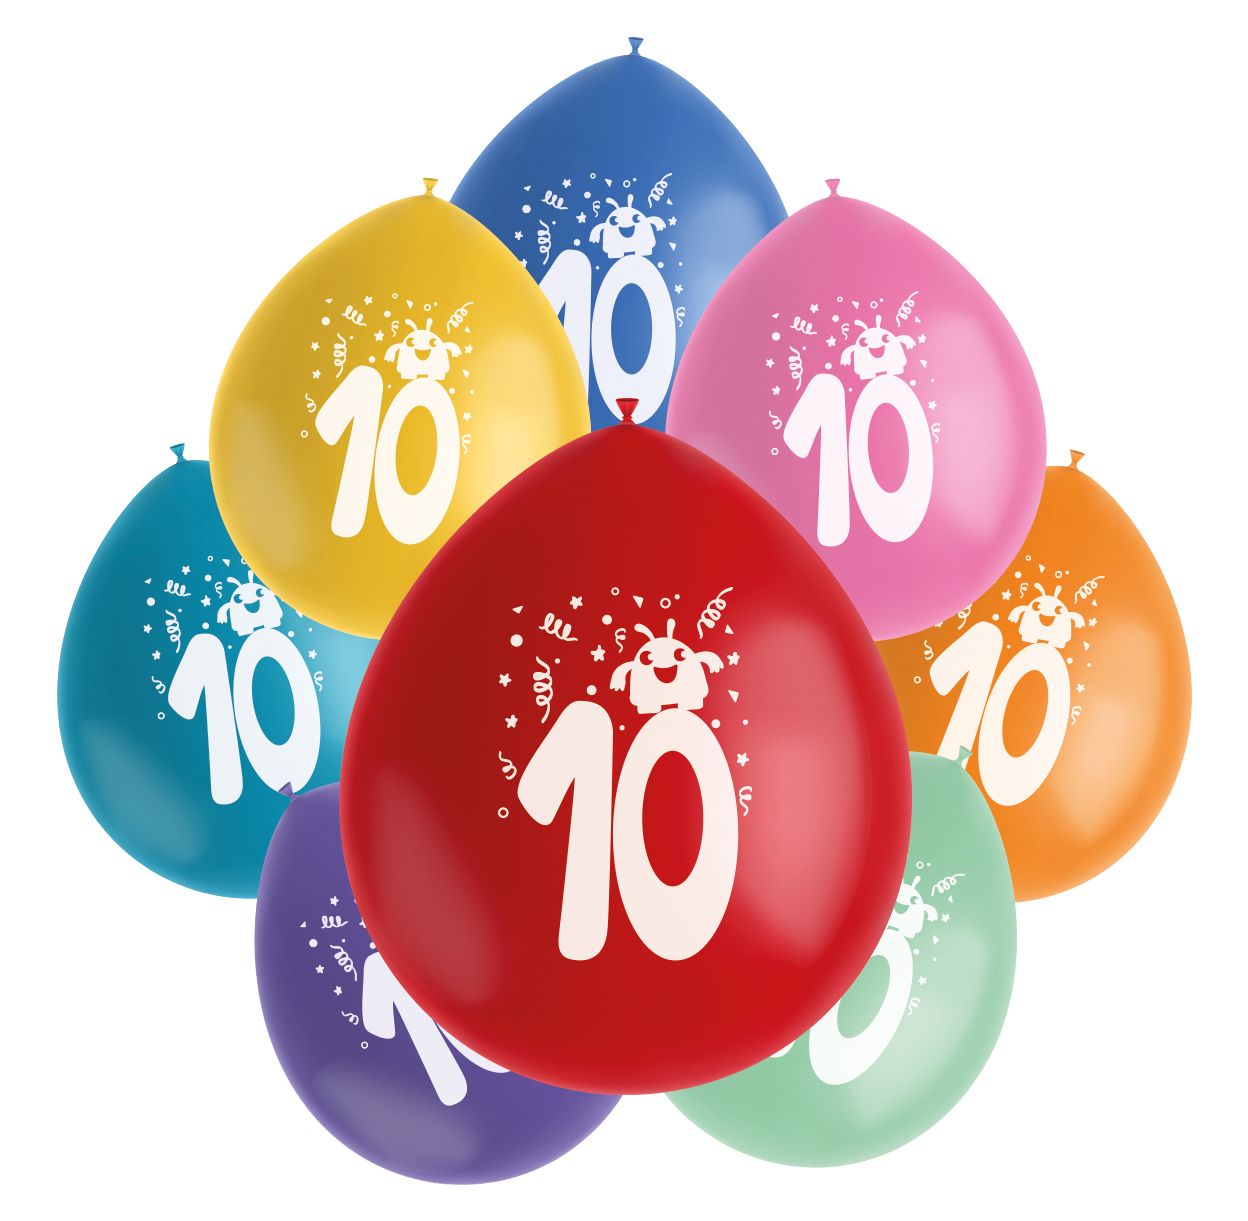 Color pop monsters ballonnen set 10 jaar